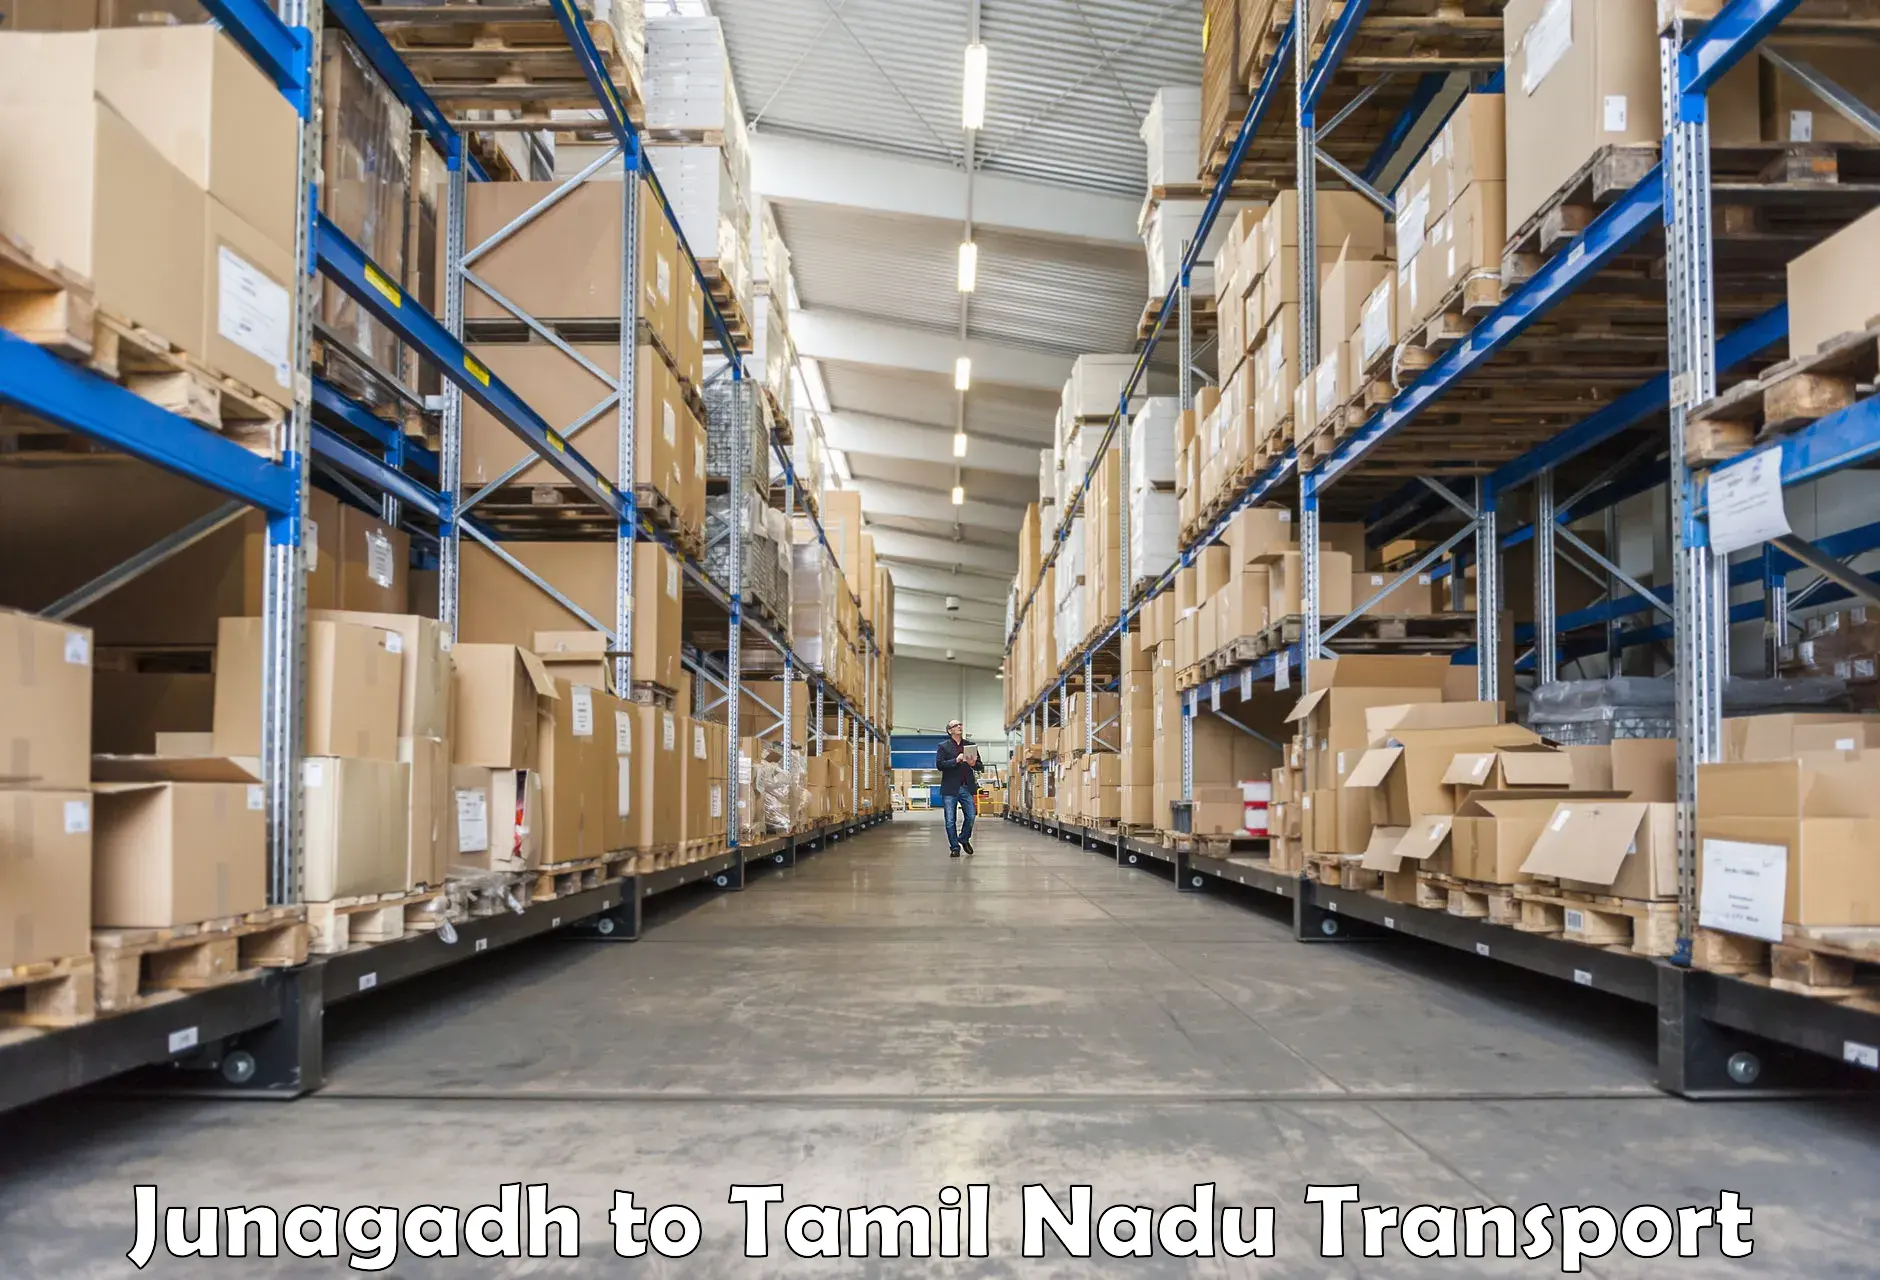 Luggage transport services Junagadh to Tiruchengode